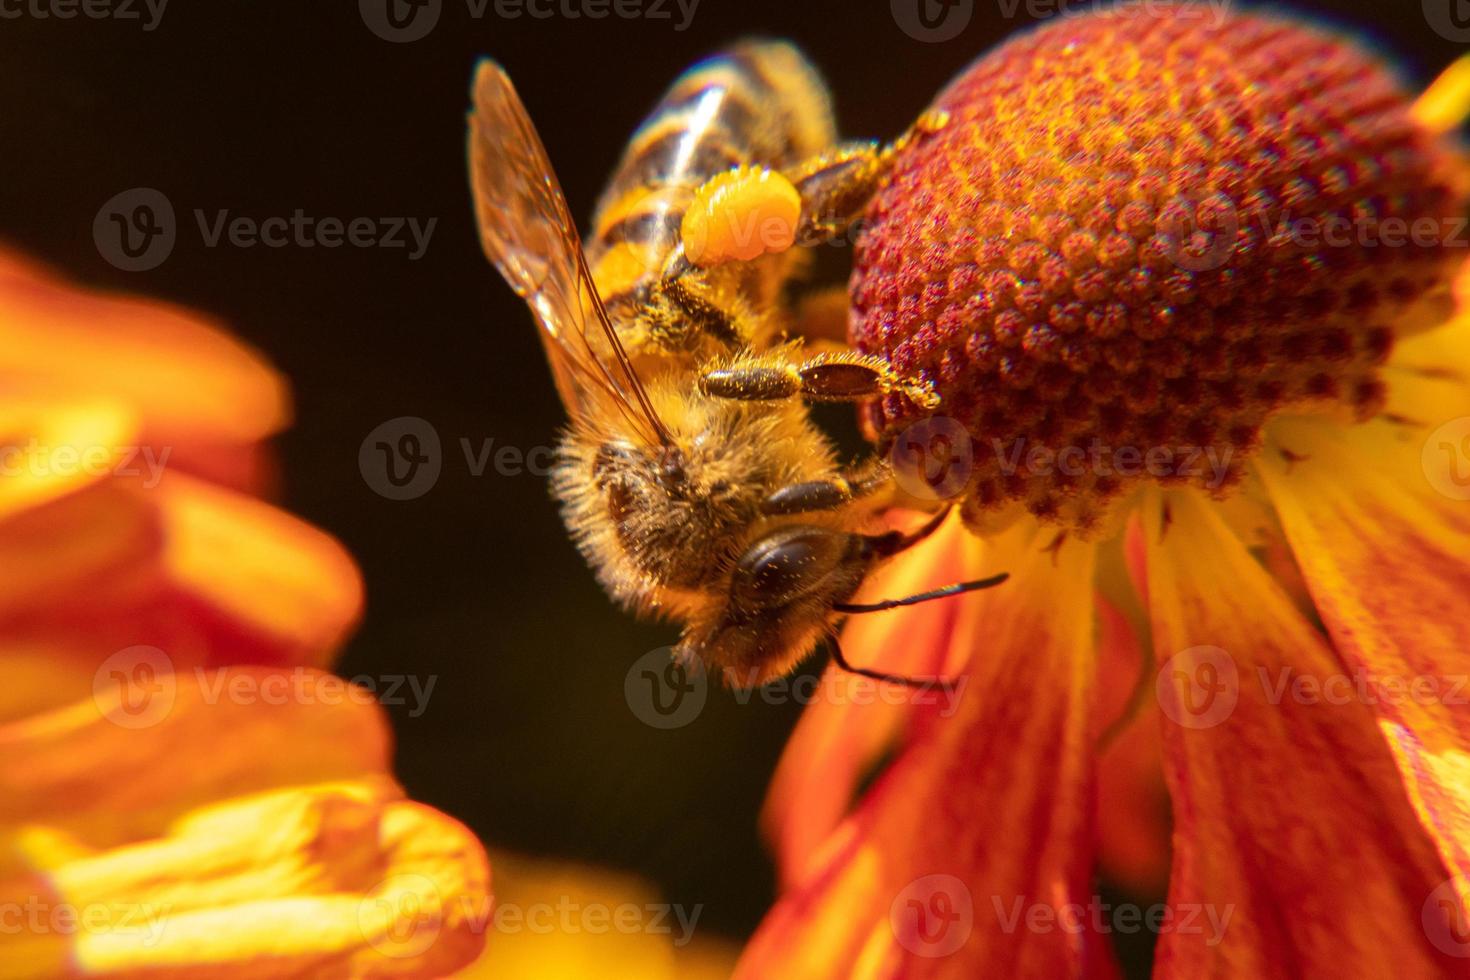 honingbij bedekt met geel stuifmeel drinken nectar, bestuivende bloem. inspirerende natuurlijke bloemen lente of zomer bloeiende tuin achtergrond. leven van insecten, extreme macro close-up selectieve focus foto